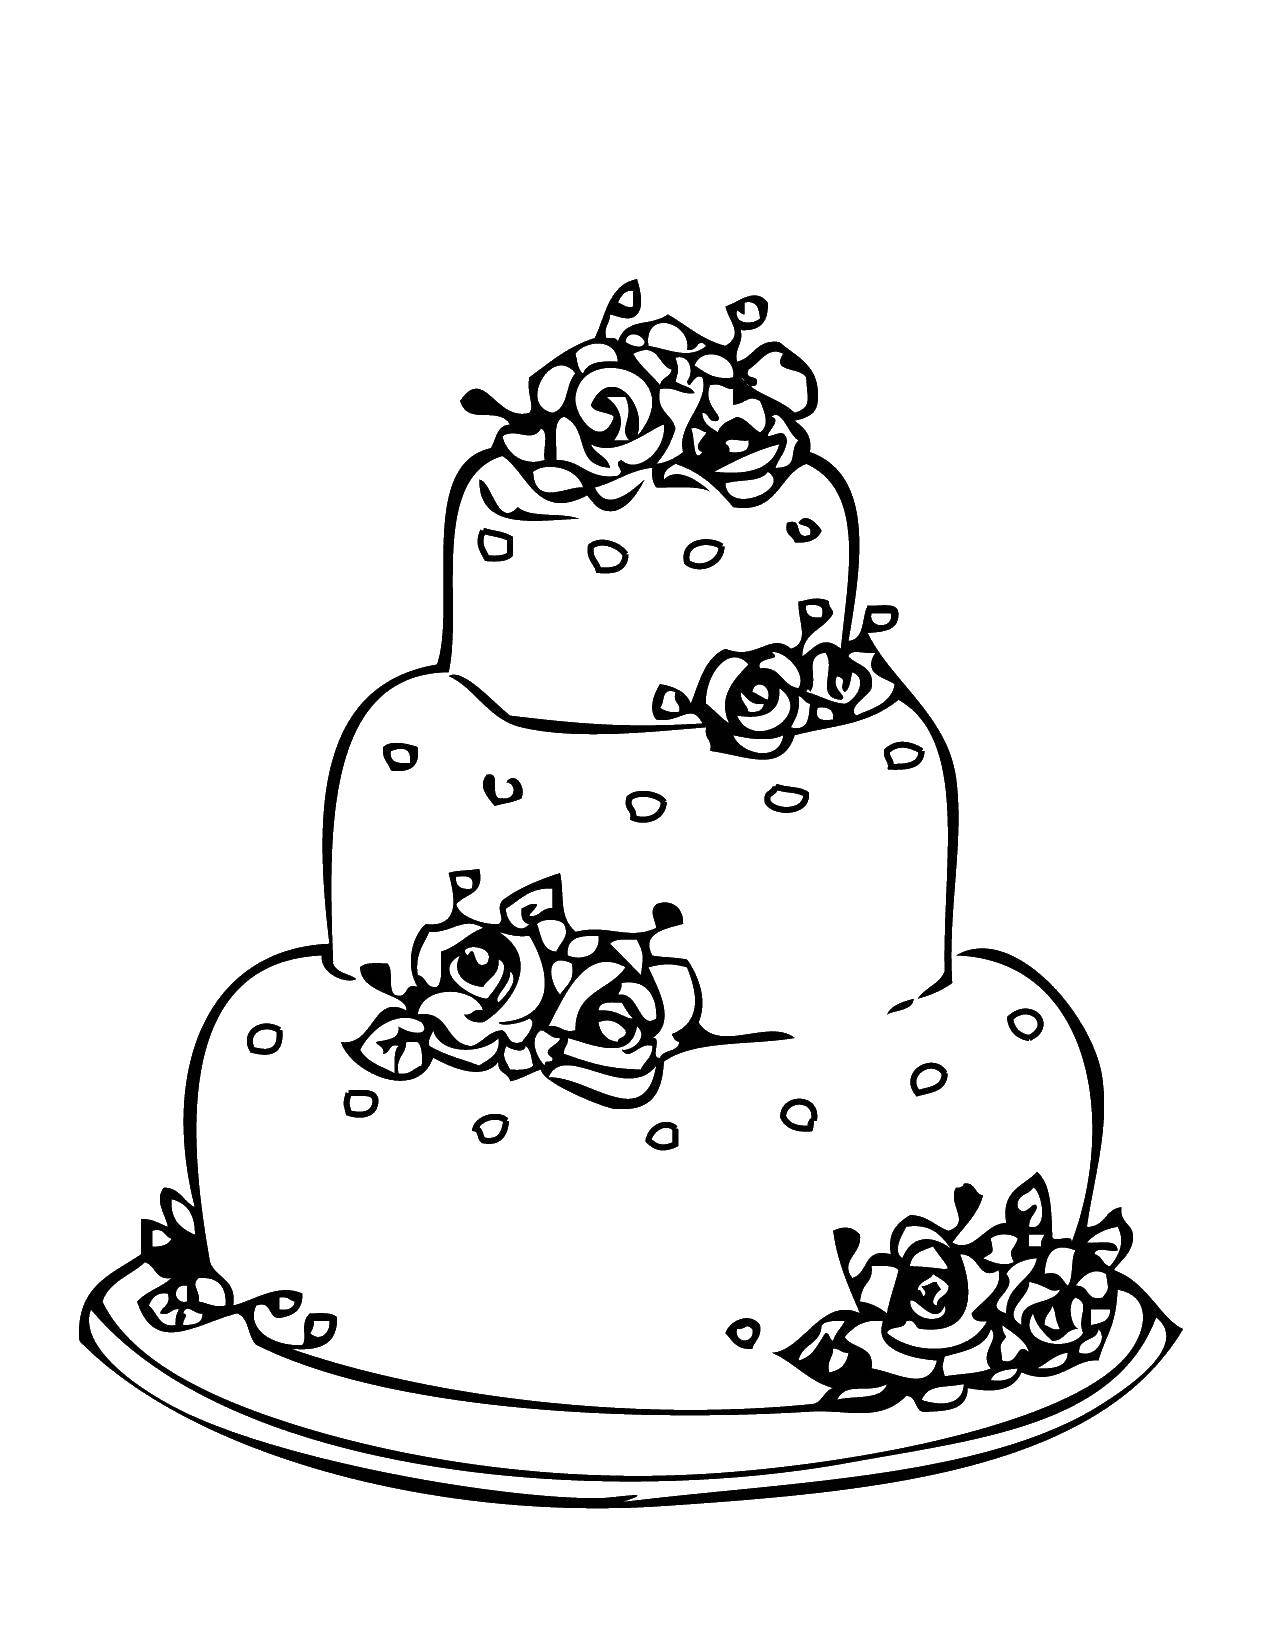 Название: Раскраска Свадебный тортик. Категория: Свадьба. Теги: Торт, еда, праздник.